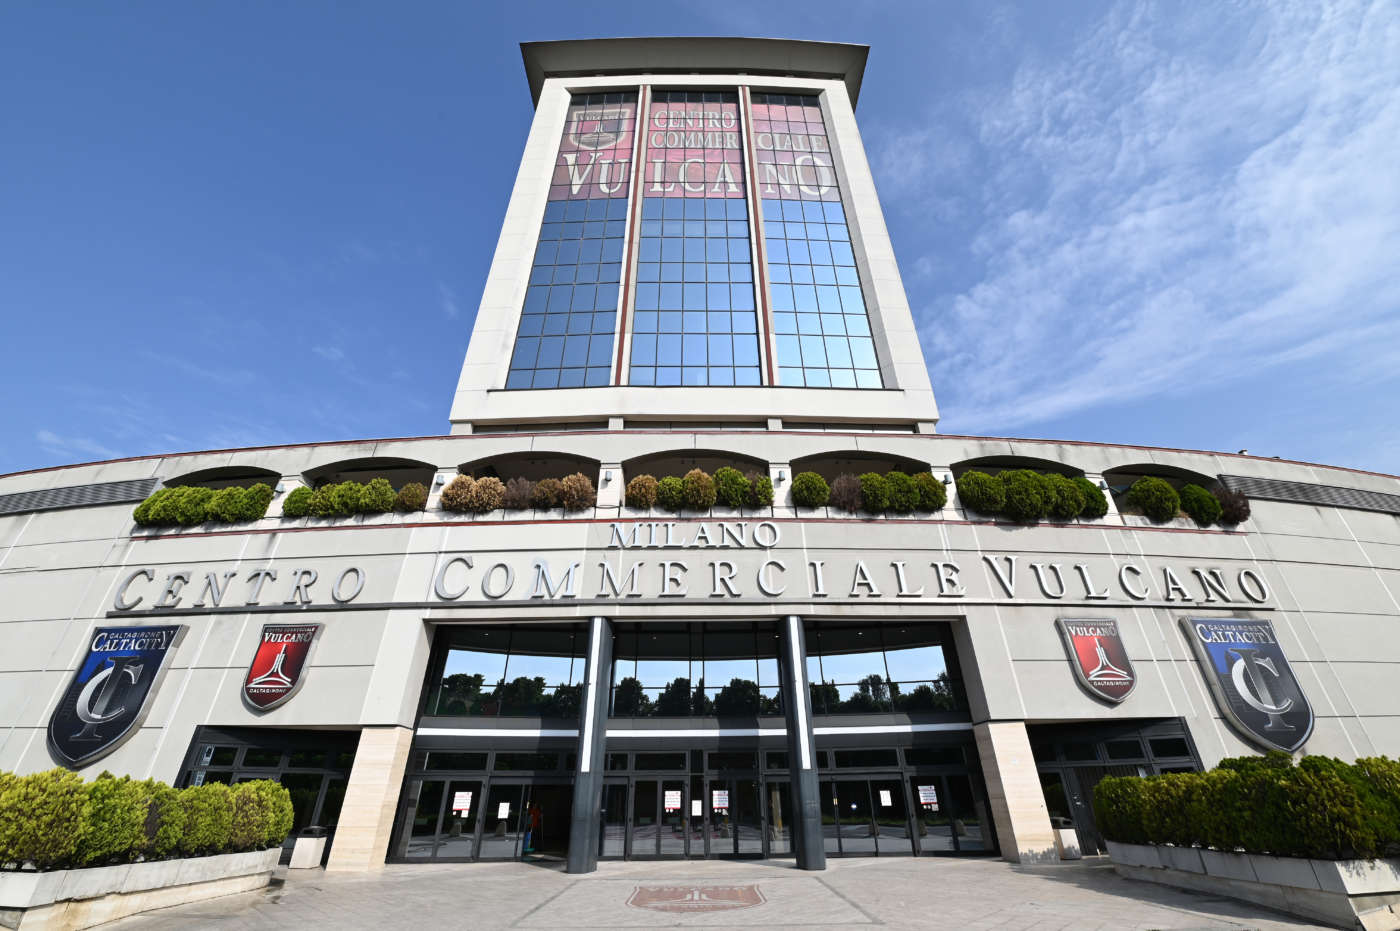 centro commerciale Vulcano Milano